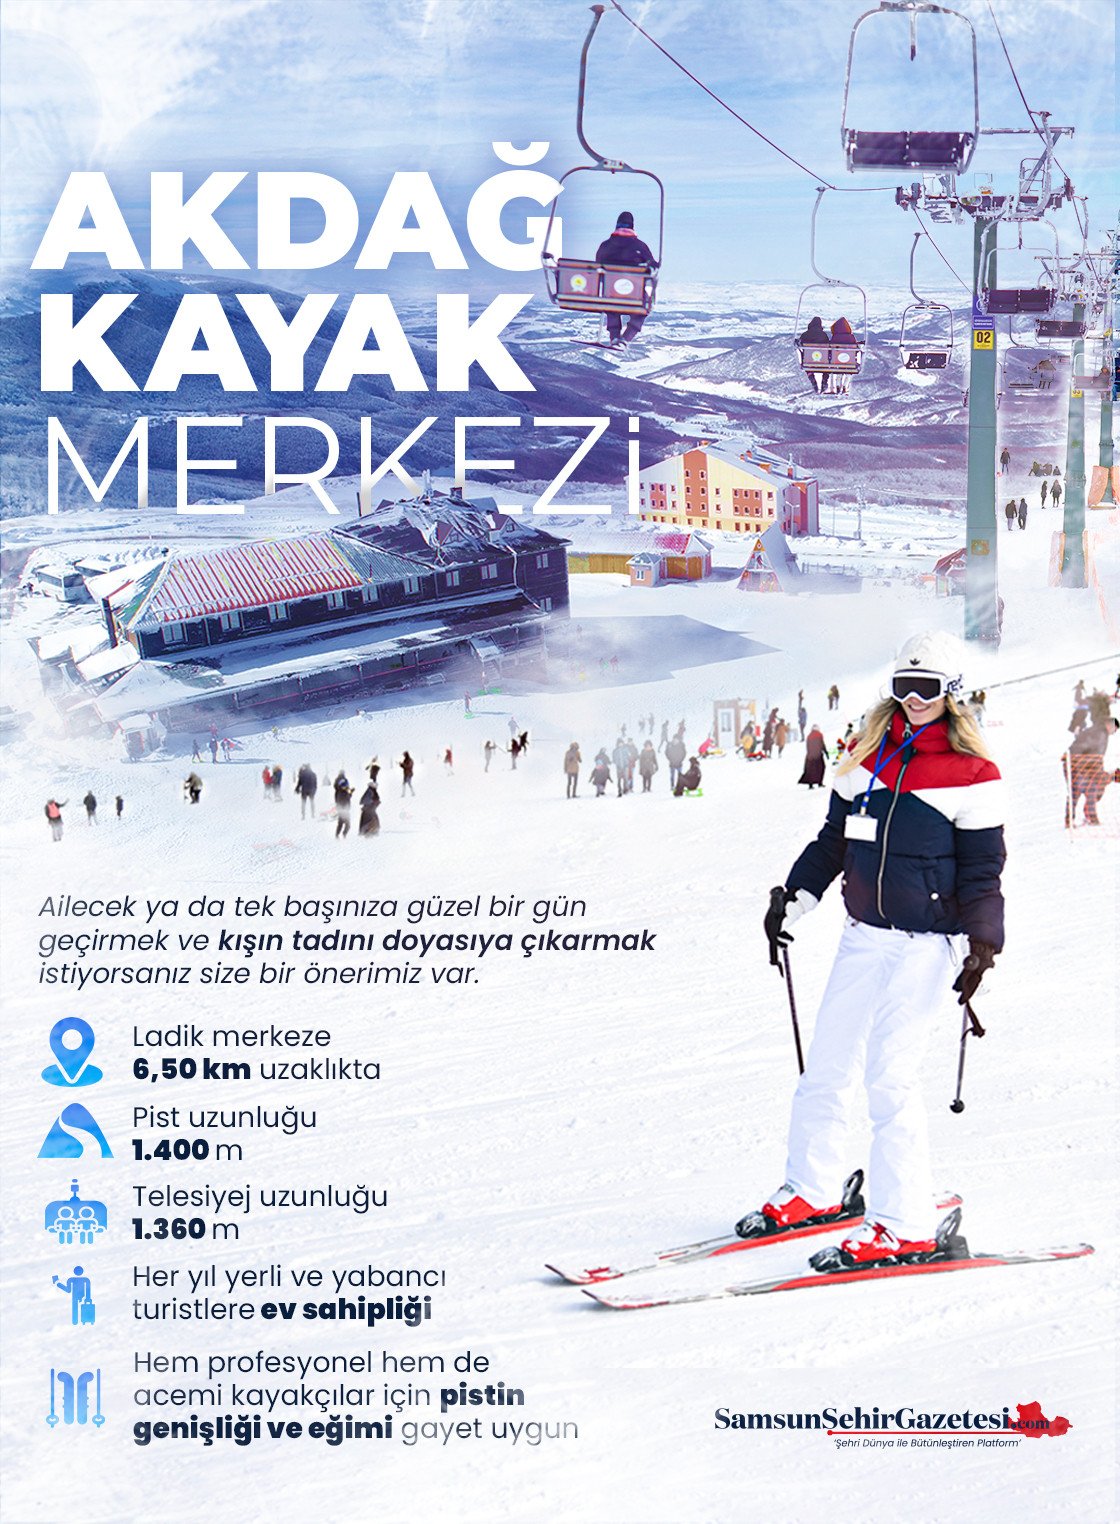 Karın Keyfini Samsun'da Çıkarın / Ladik Akdağ Kayak Merkezi Görseli